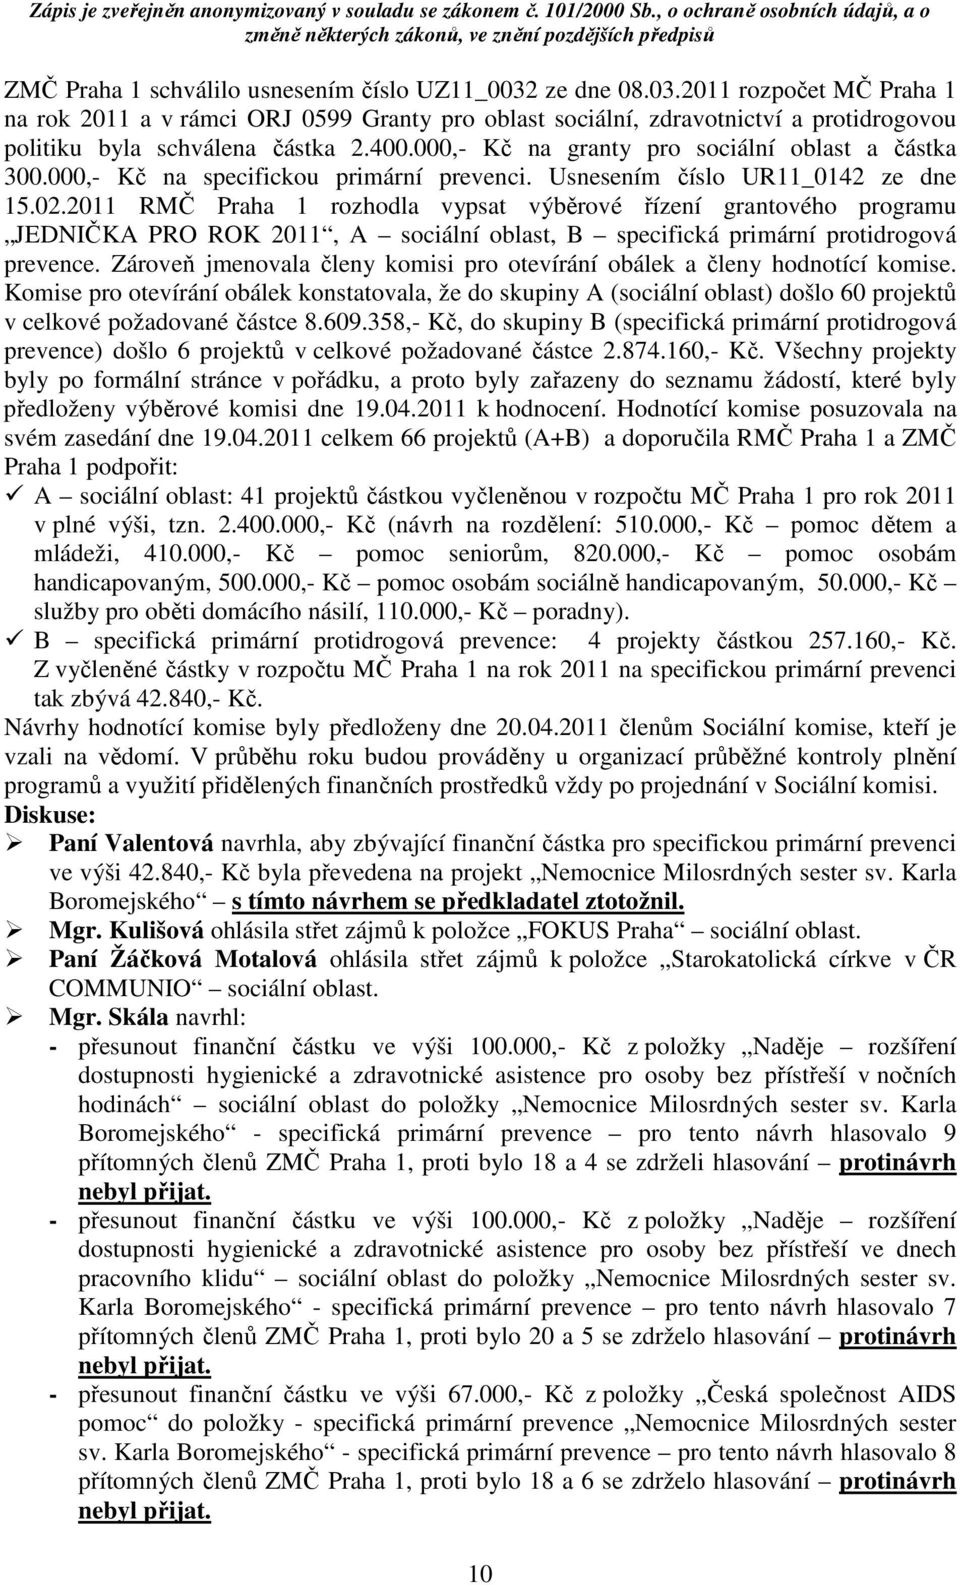 2011 RMČ Praha 1 rozhodla vypsat výběrové řízení grantového programu JEDNIČKA PRO ROK 2011, A sociální oblast, B specifická primární protidrogová prevence.